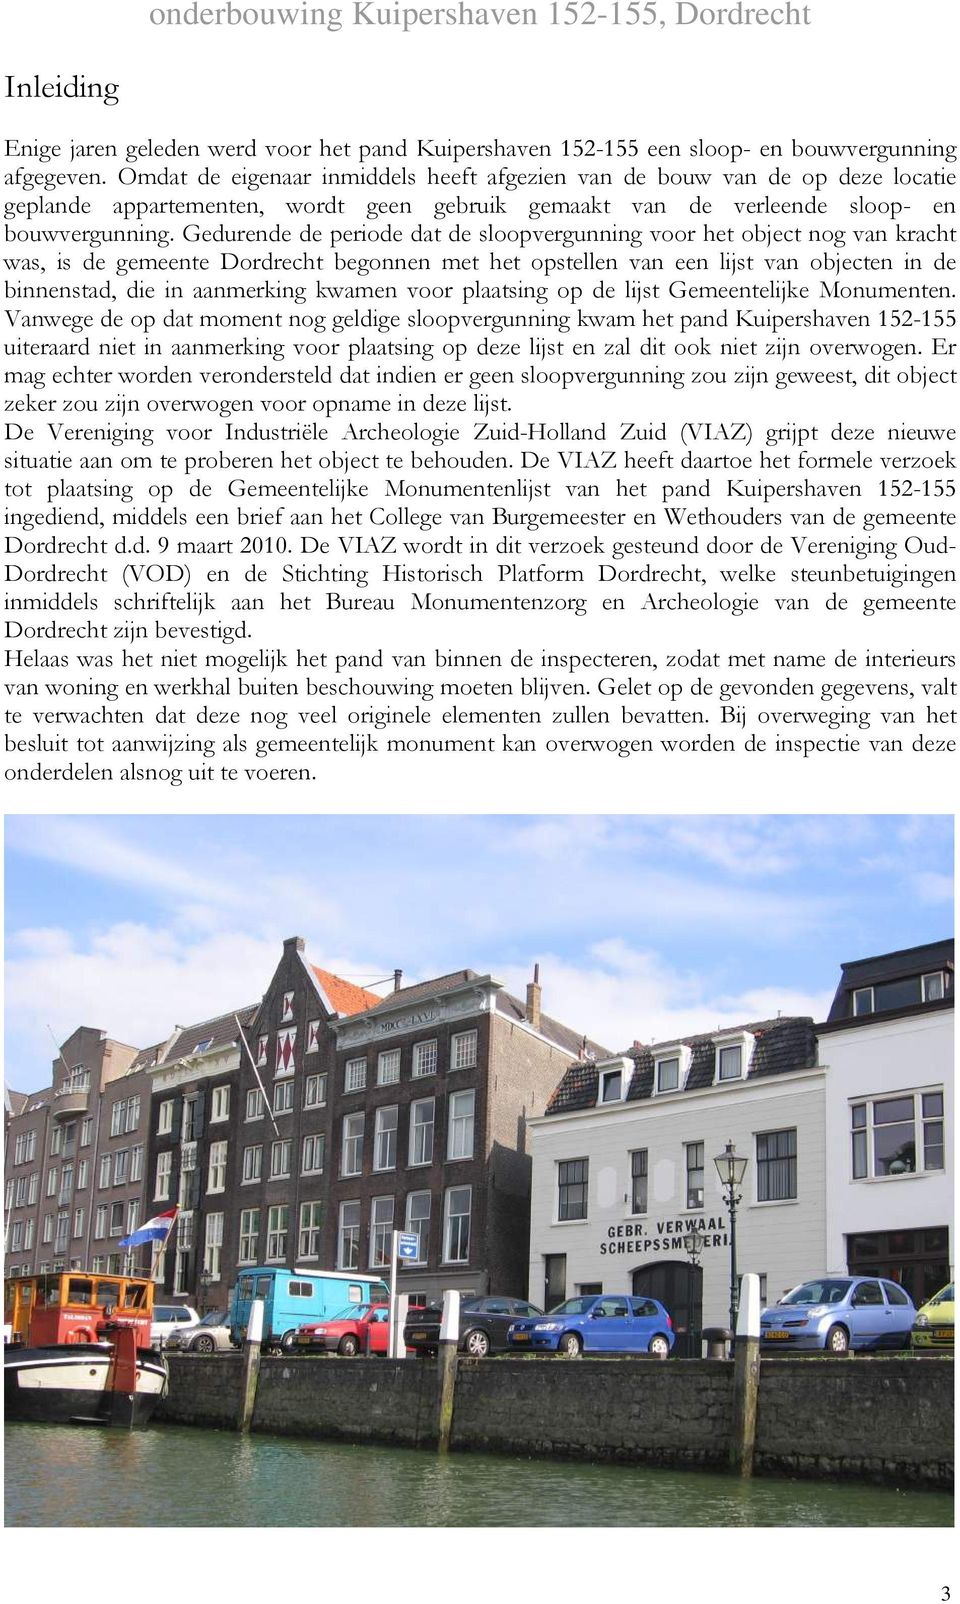 Gedurende de periode dat de sloopvergunning voor het object nog van kracht was, is de gemeente Dordrecht begonnen met het opstellen van een lijst van objecten in de binnenstad, die in aanmerking